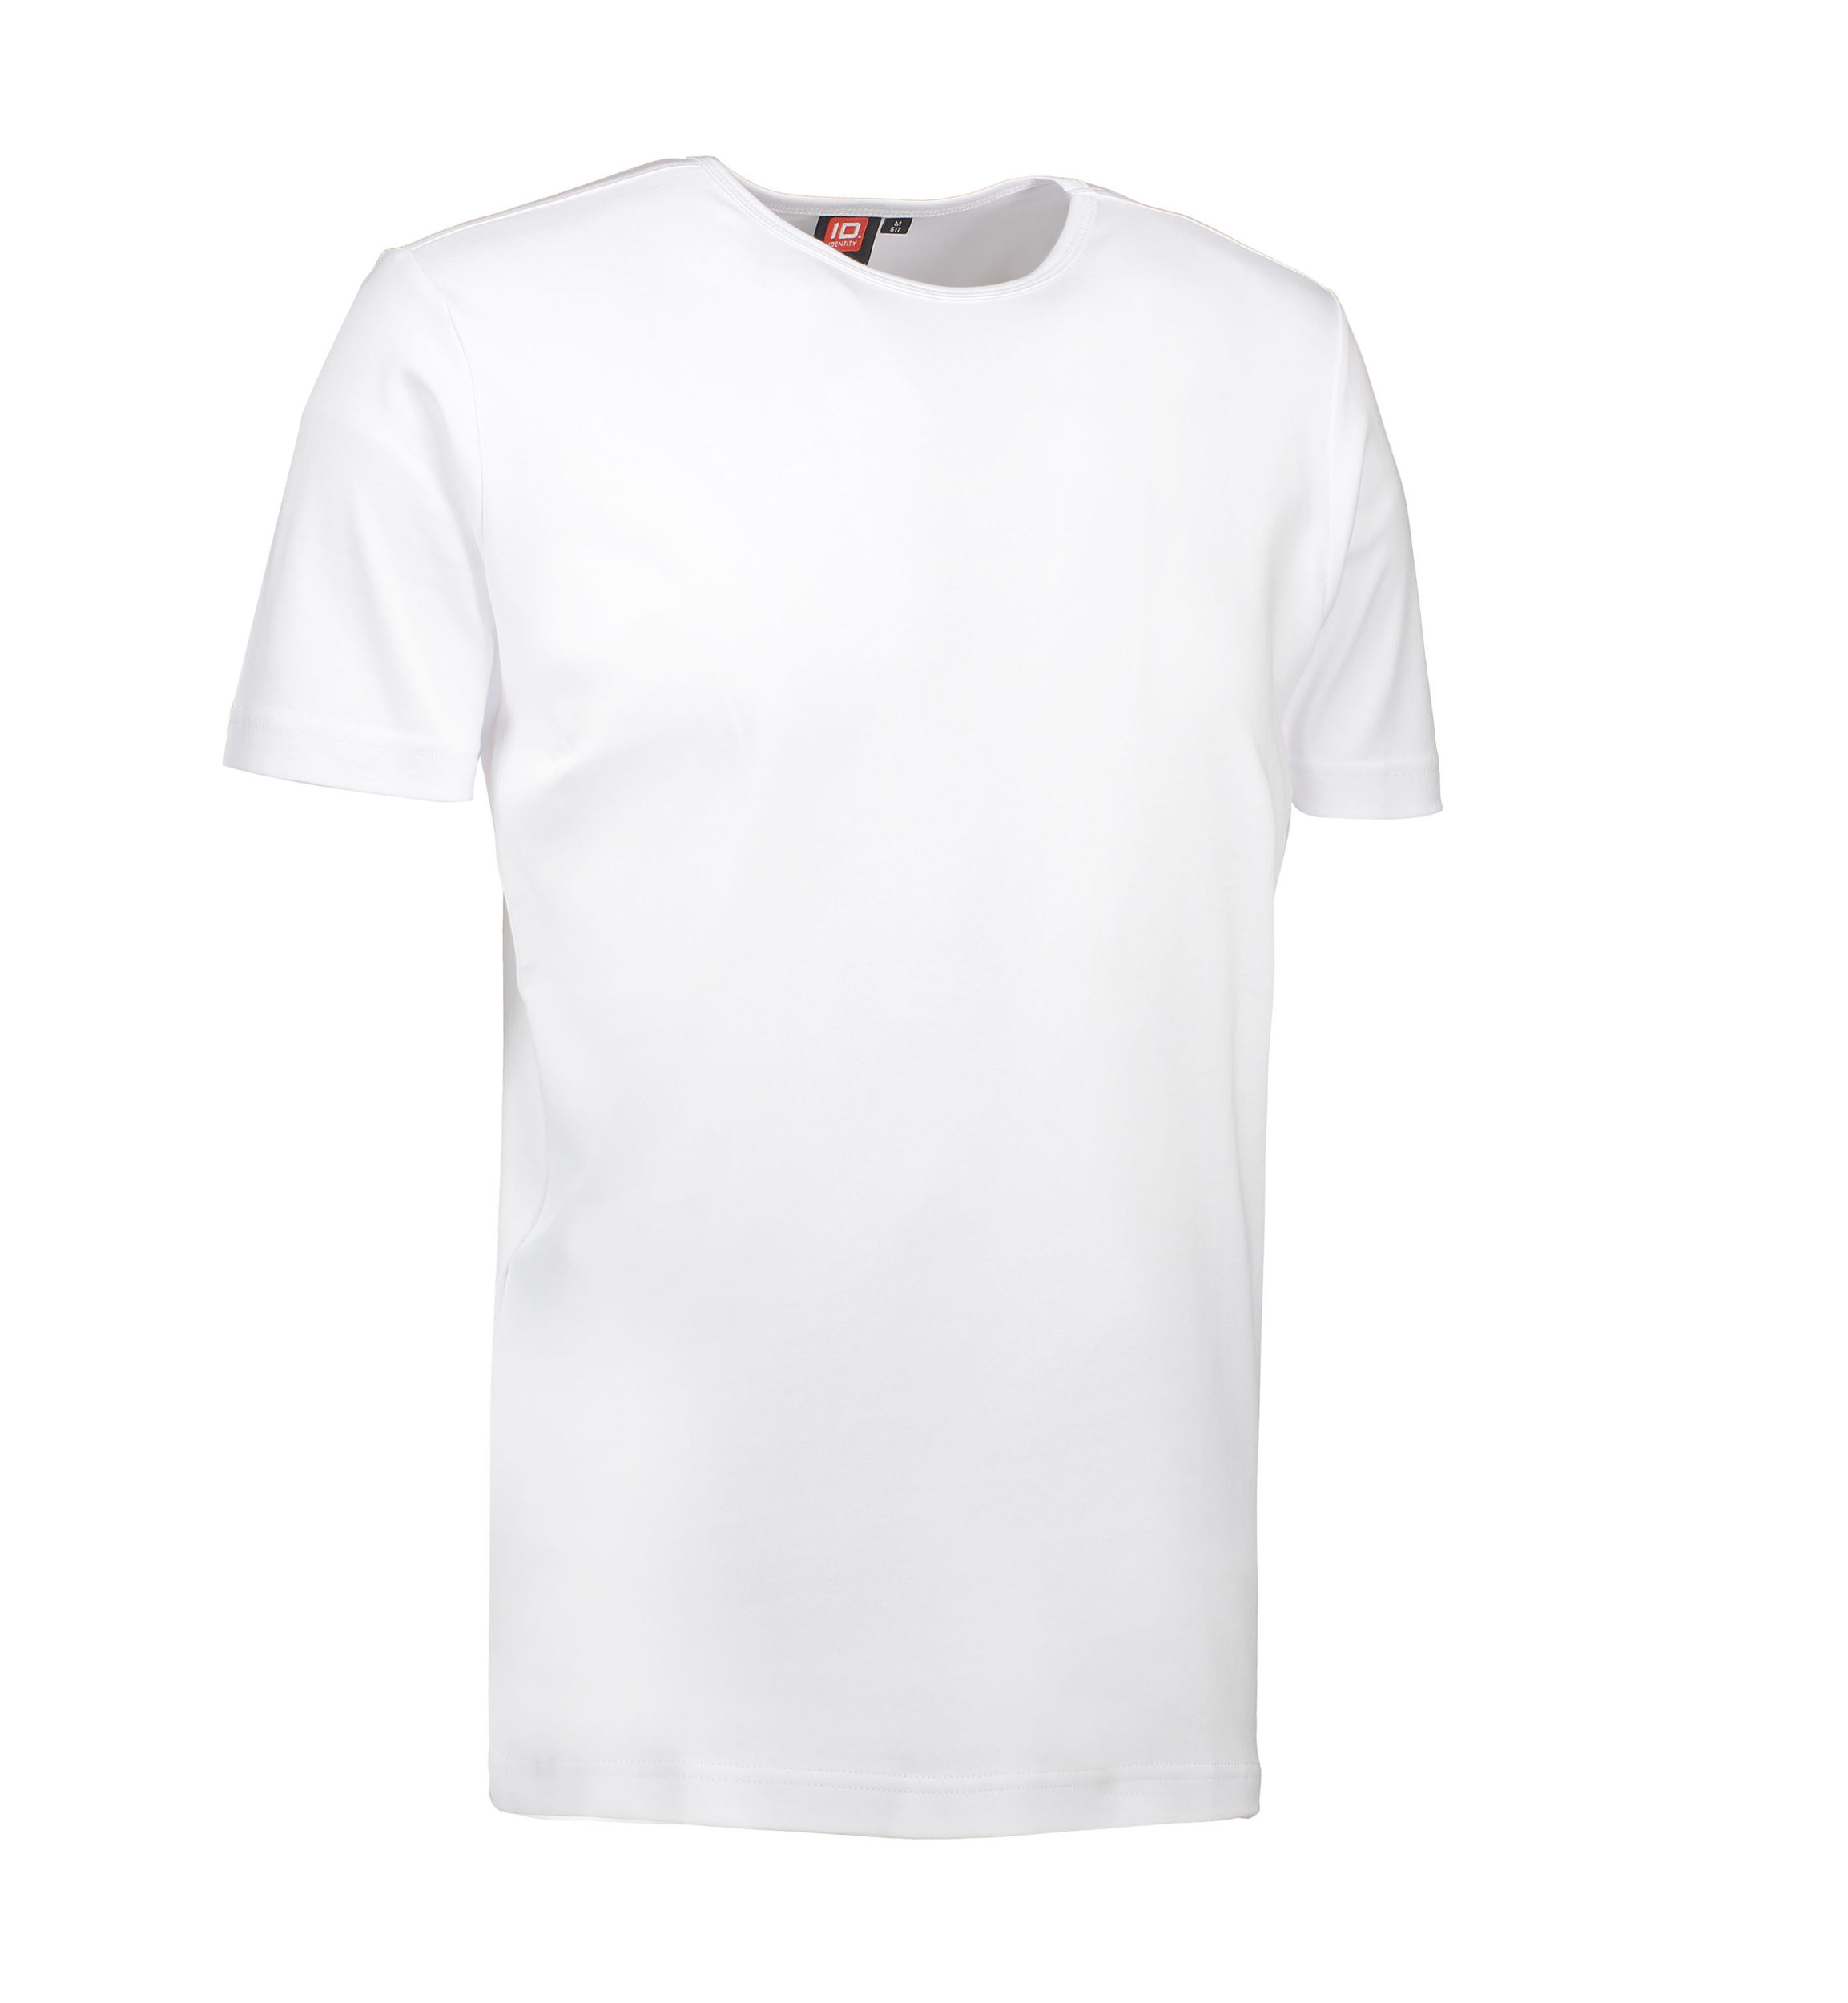 Billede af Hvid t-shirt med rund hals til mænd - M hos Sygeplejebutikken.dk